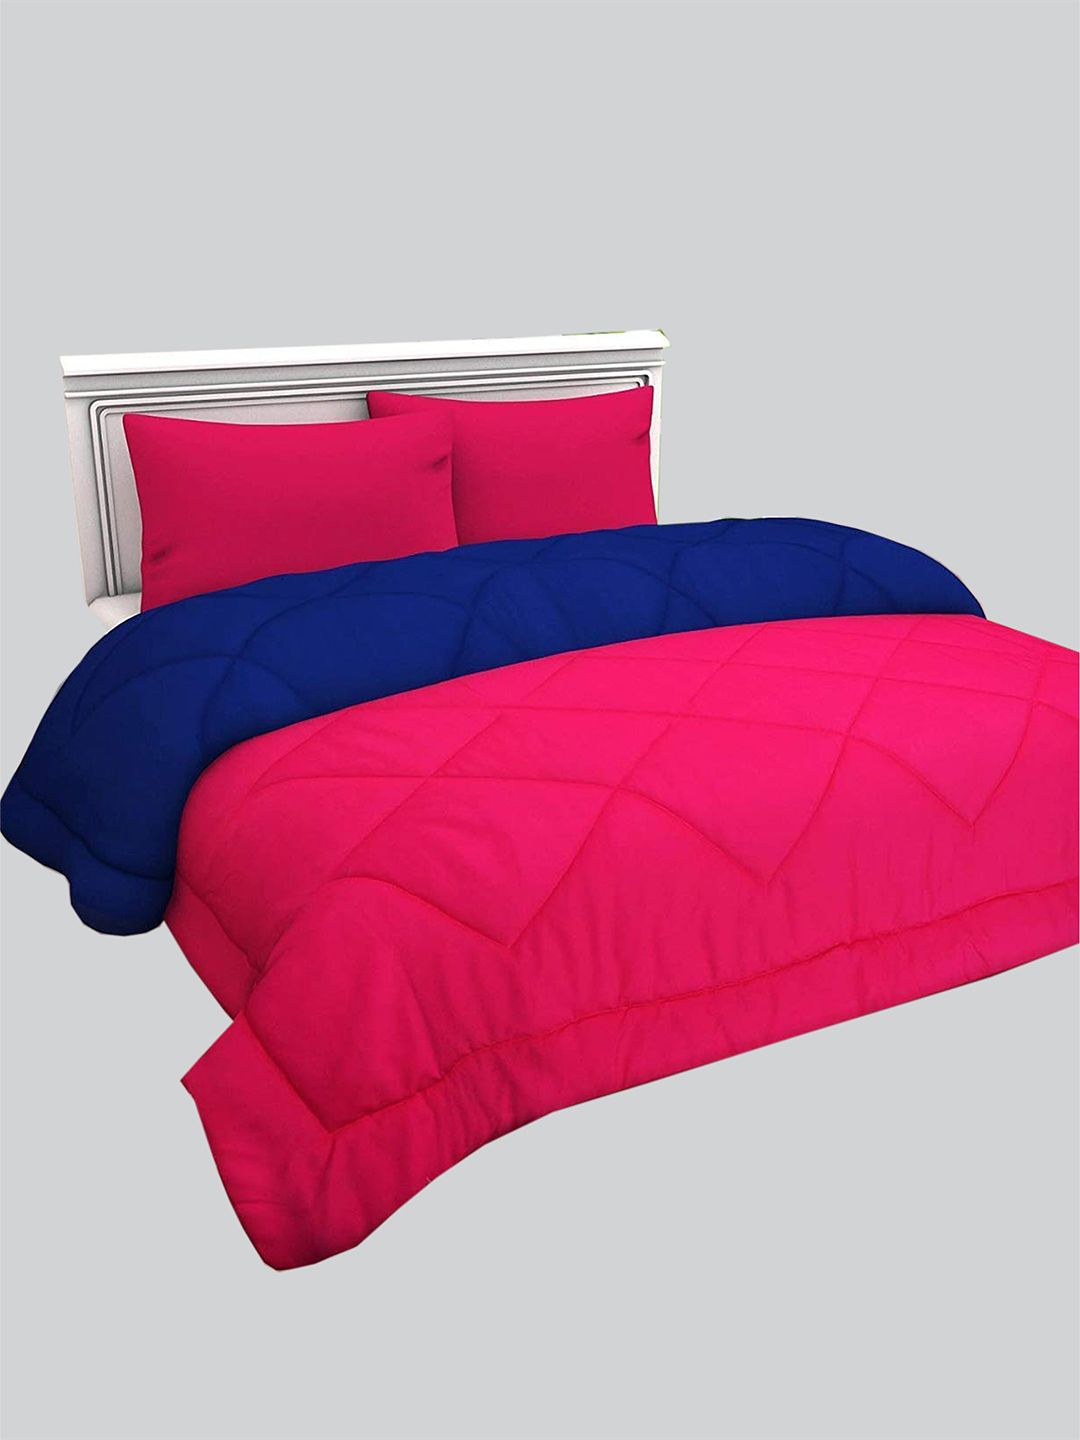 RAASO Pink & Blue Microfiber AC Room Reversible Single Bed Blanket Price in India